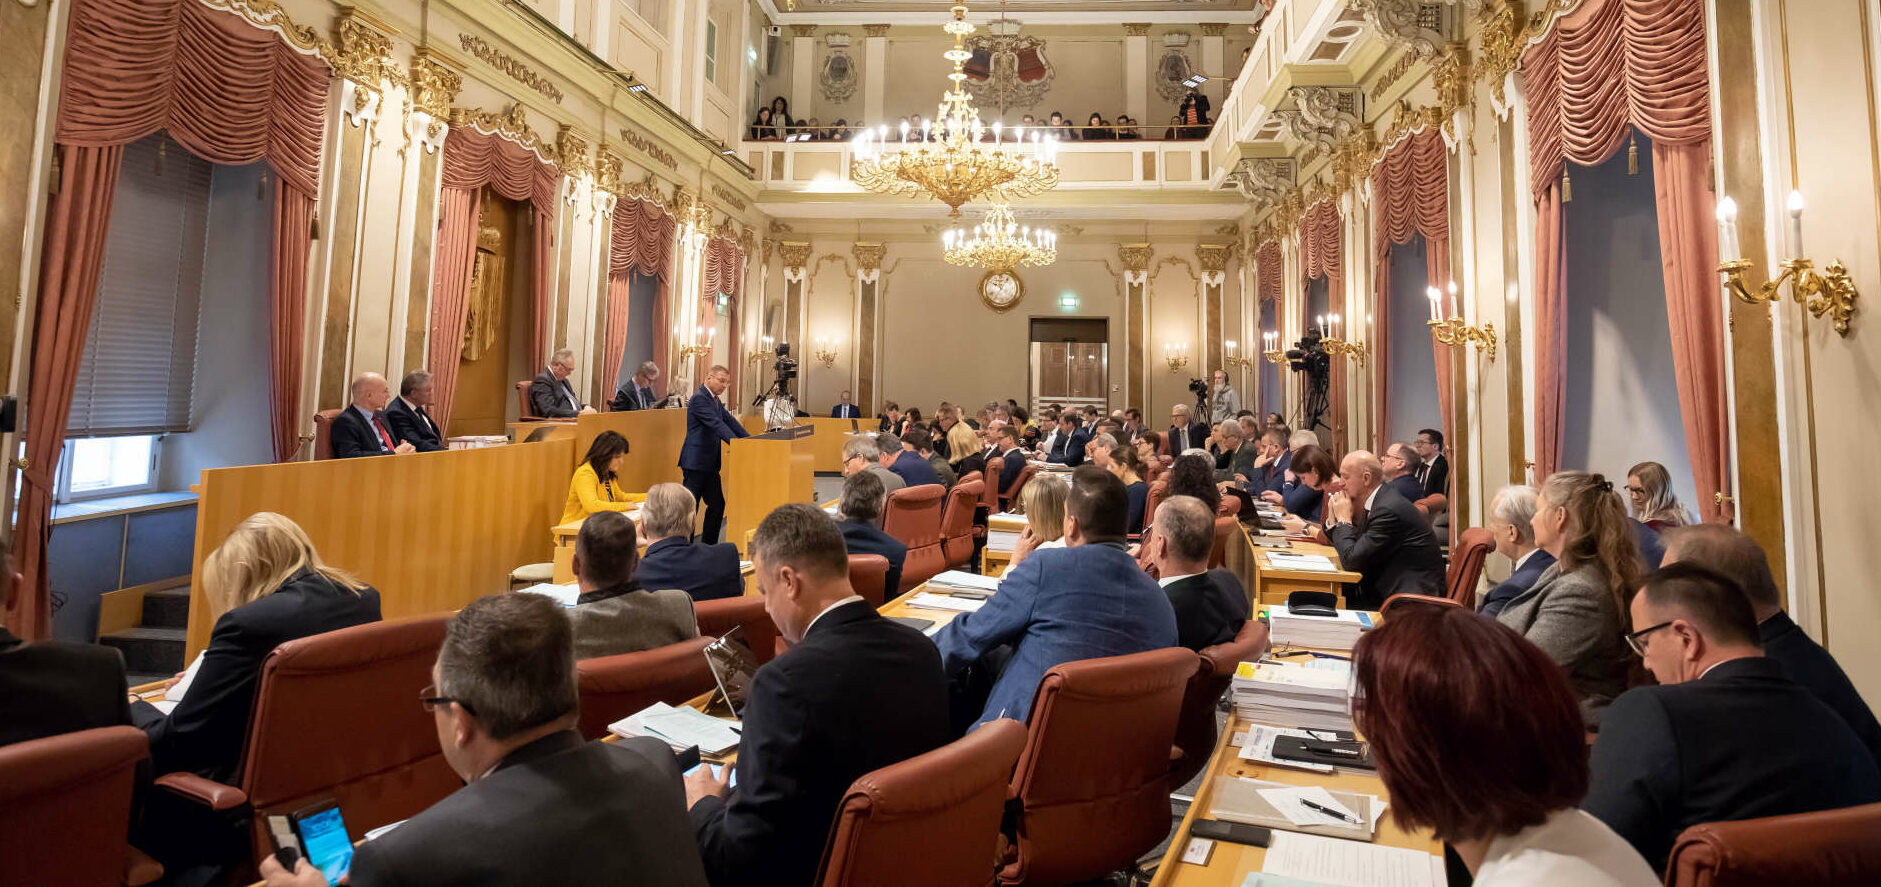 Dieses Bild wird es am kommenden Donnerstag nicht geben, der Landtagssitzungssaal bleibt leer, weil die Sitzung des Landesparlaments in den Ursulinenhof verlegt wurde.